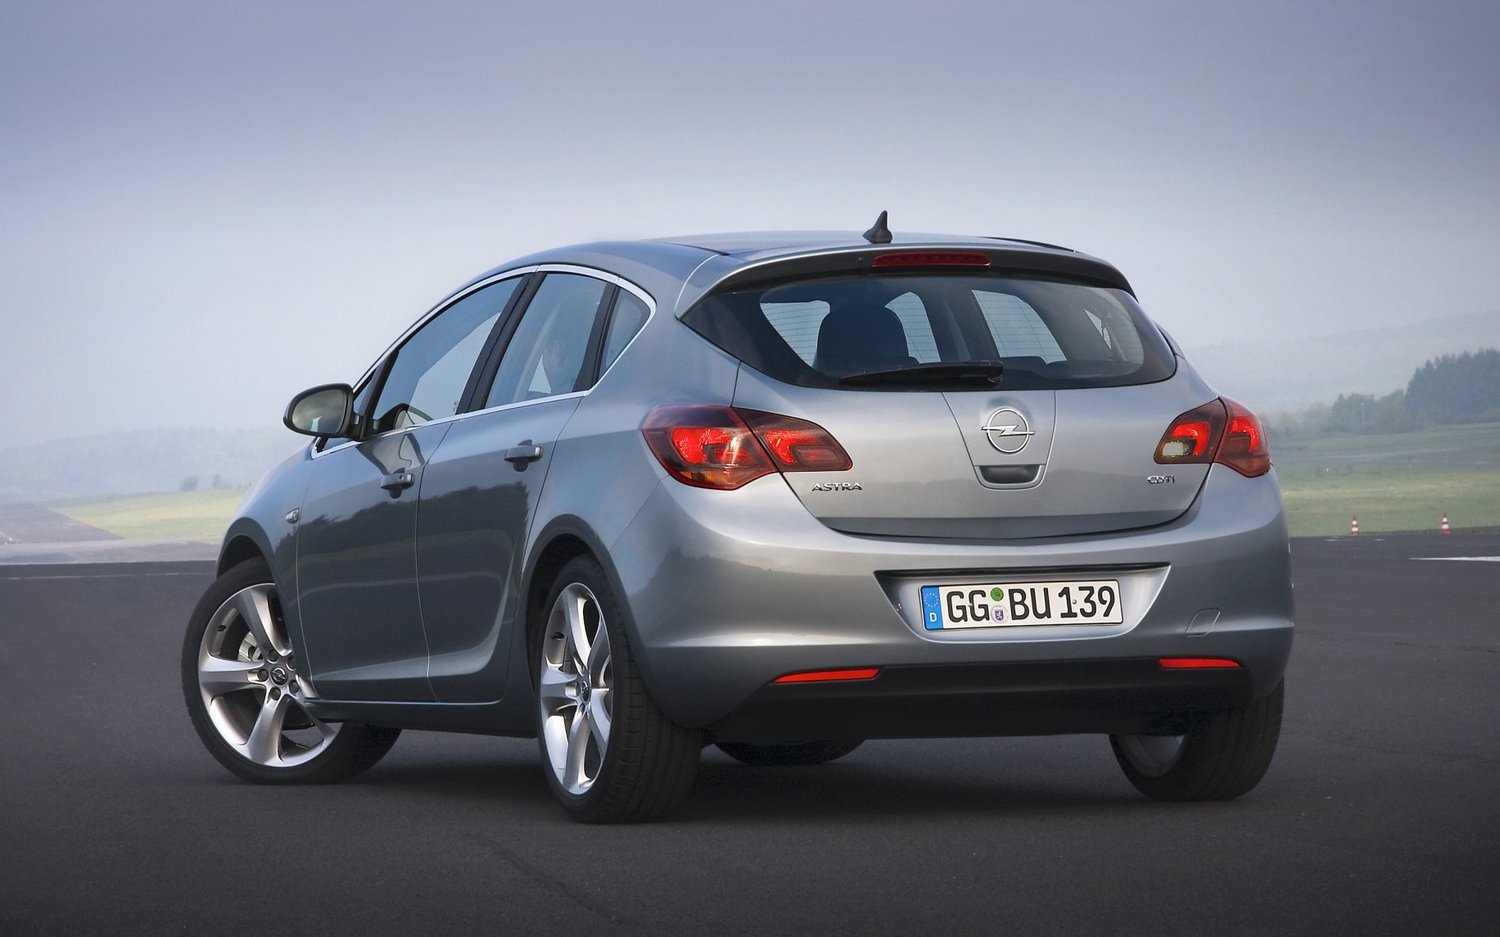 хэтчбек 5 дв. Opel Astra 2010 - 2012г выпуска модификация 1.2 MT (95 л.с.)